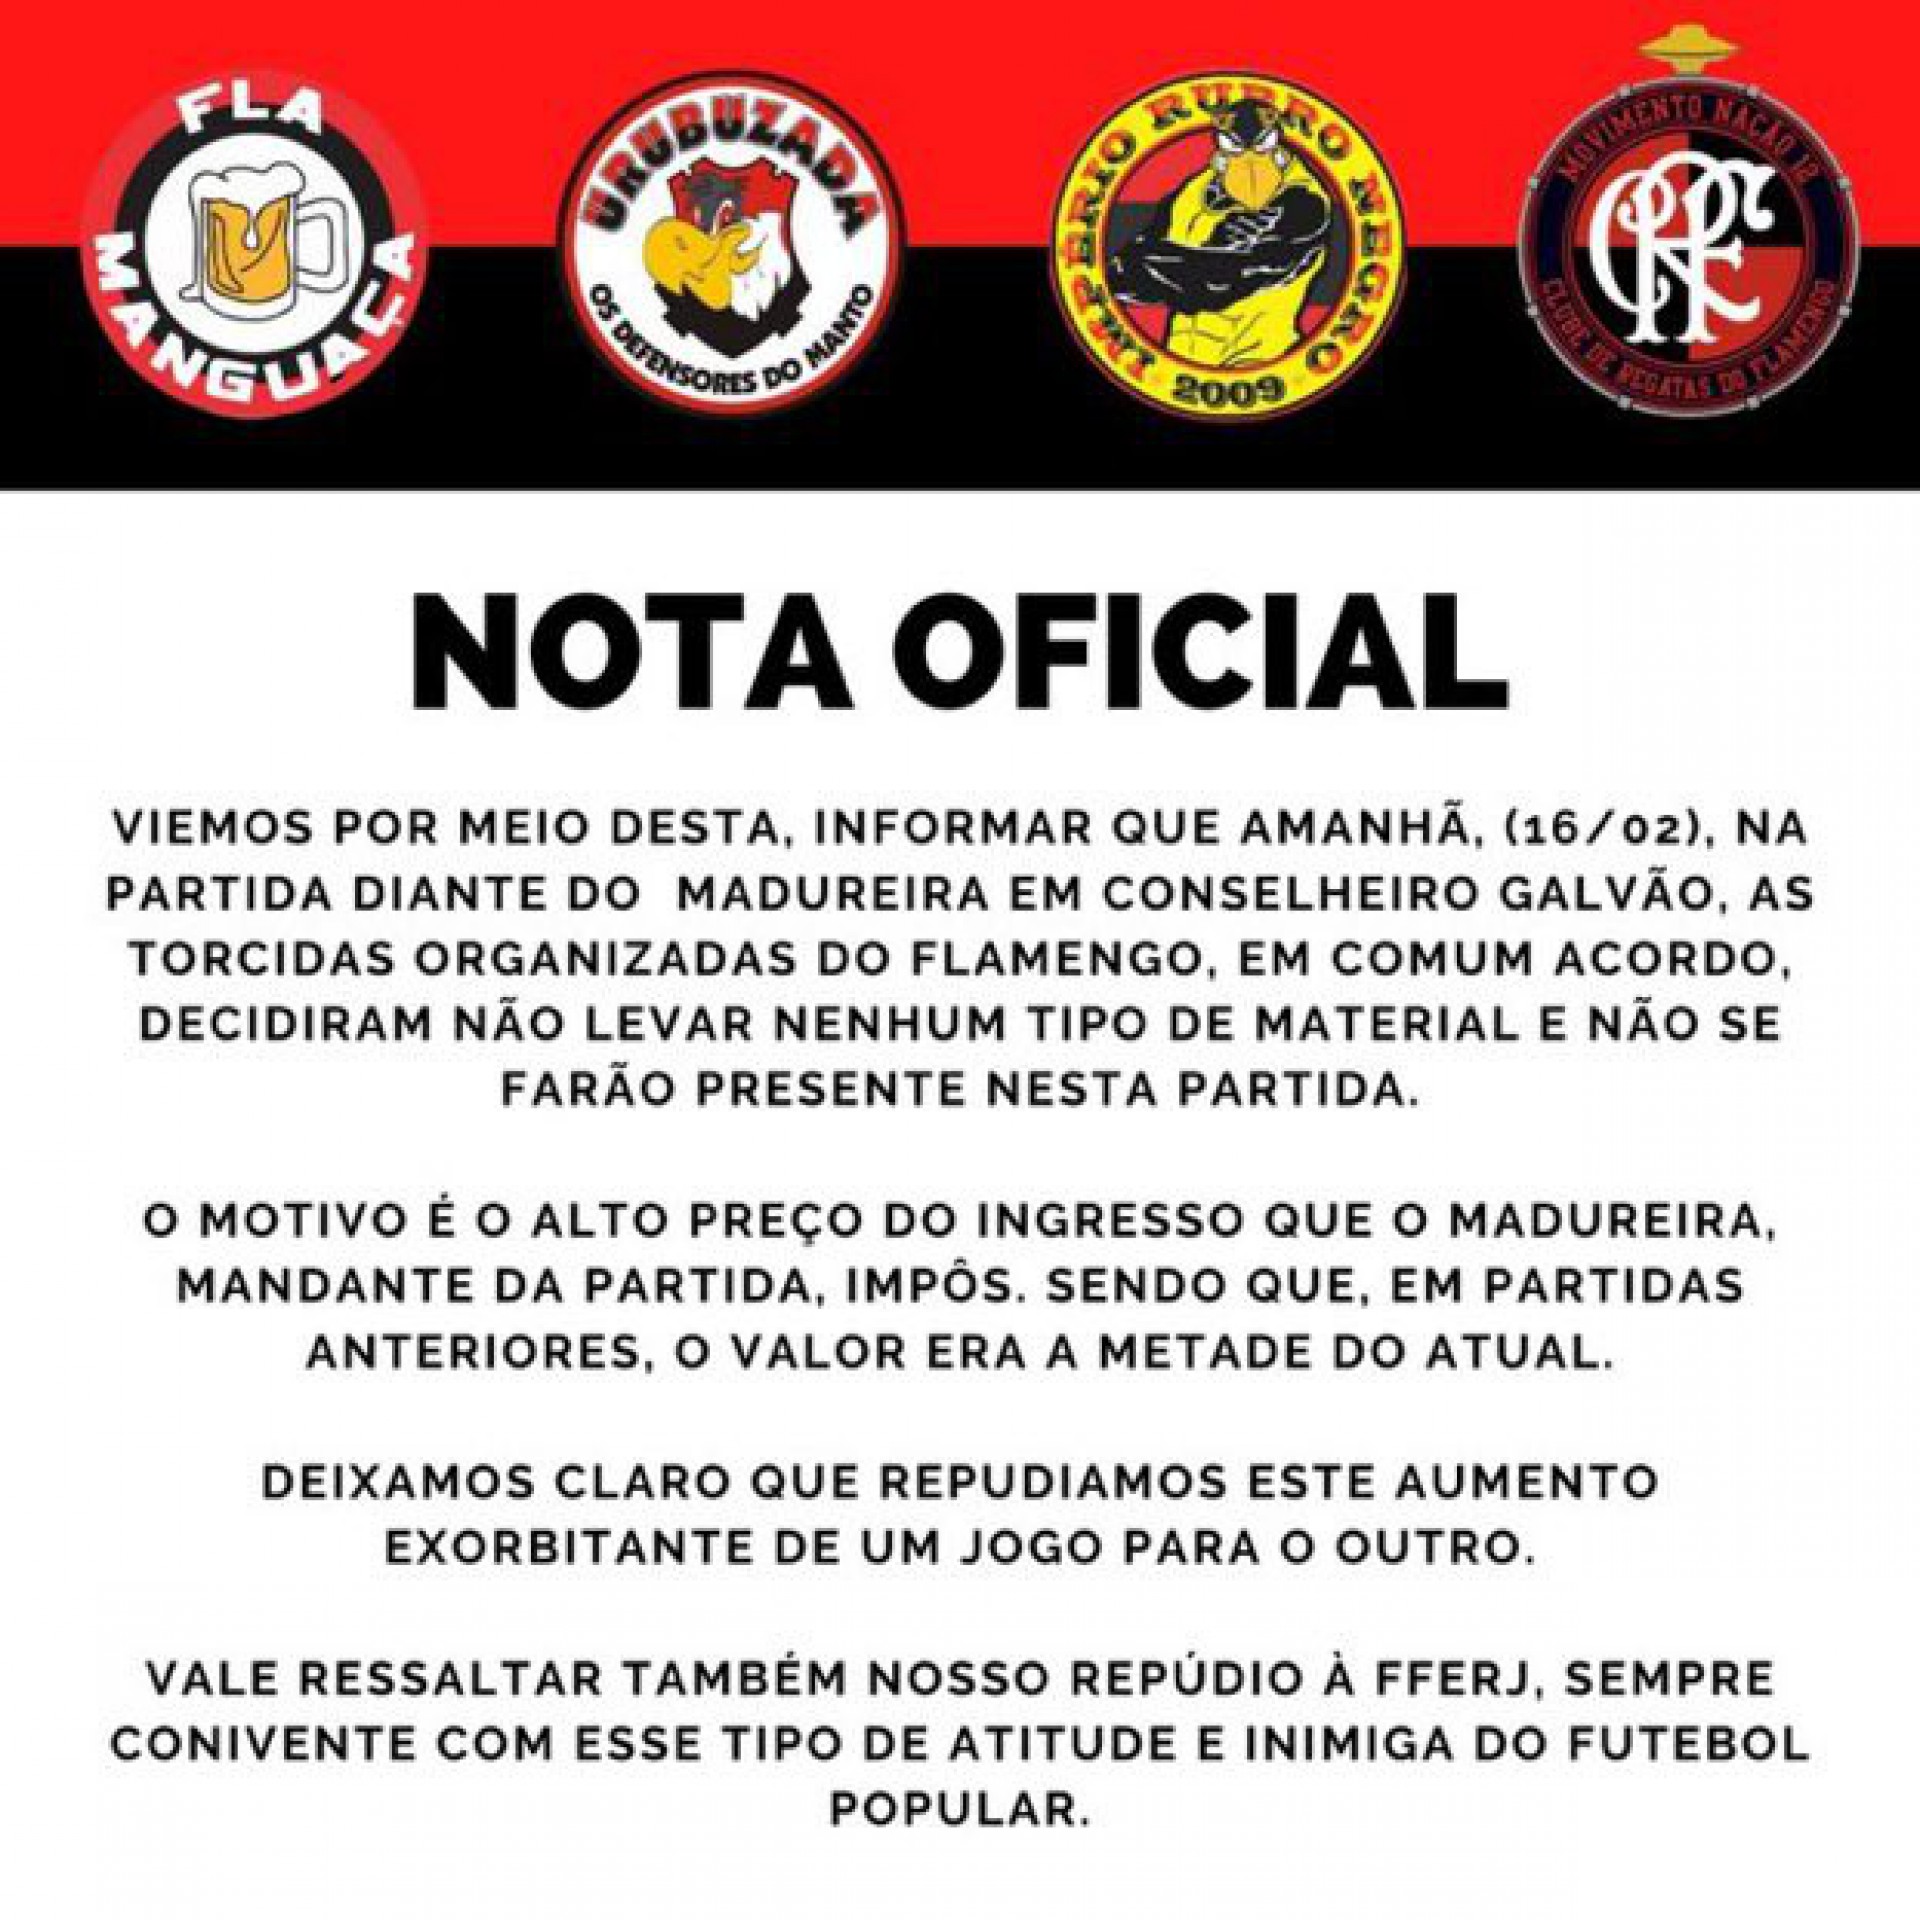 Nota das torcidas organizadas do Flamengo sobre os valores dos ingressos para o confronto contra o Madureira - Reprodução